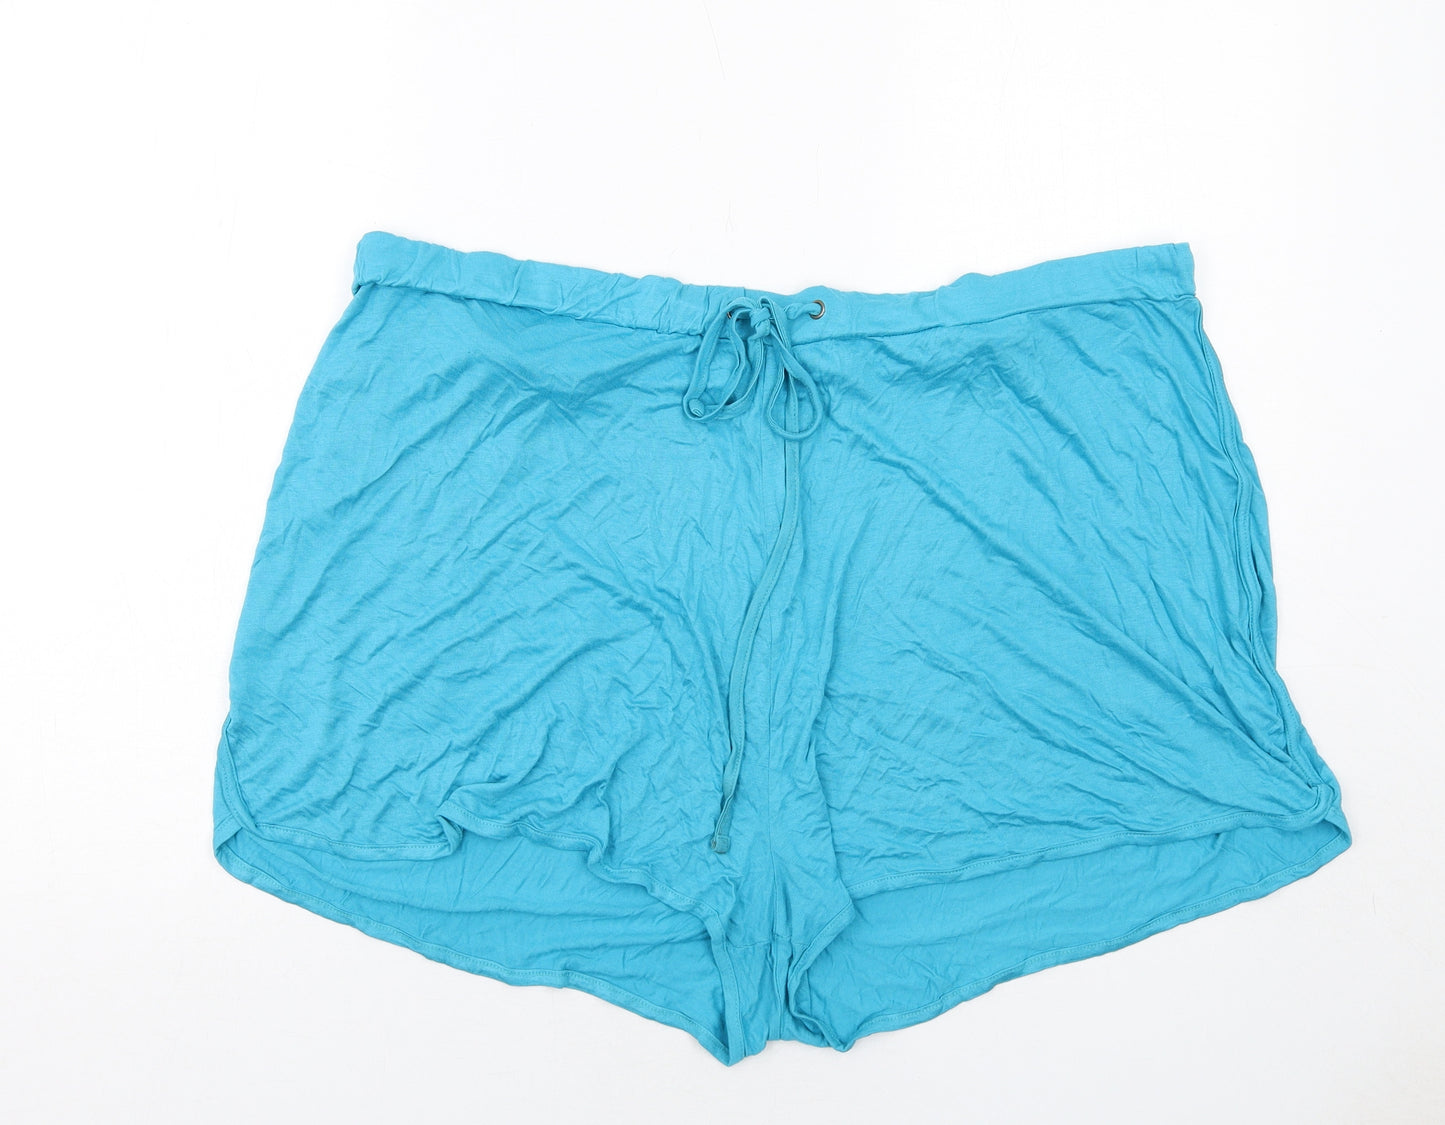 Be You Womens Blue Viscose Hot Pants Shorts Size 24 Regular Drawstring